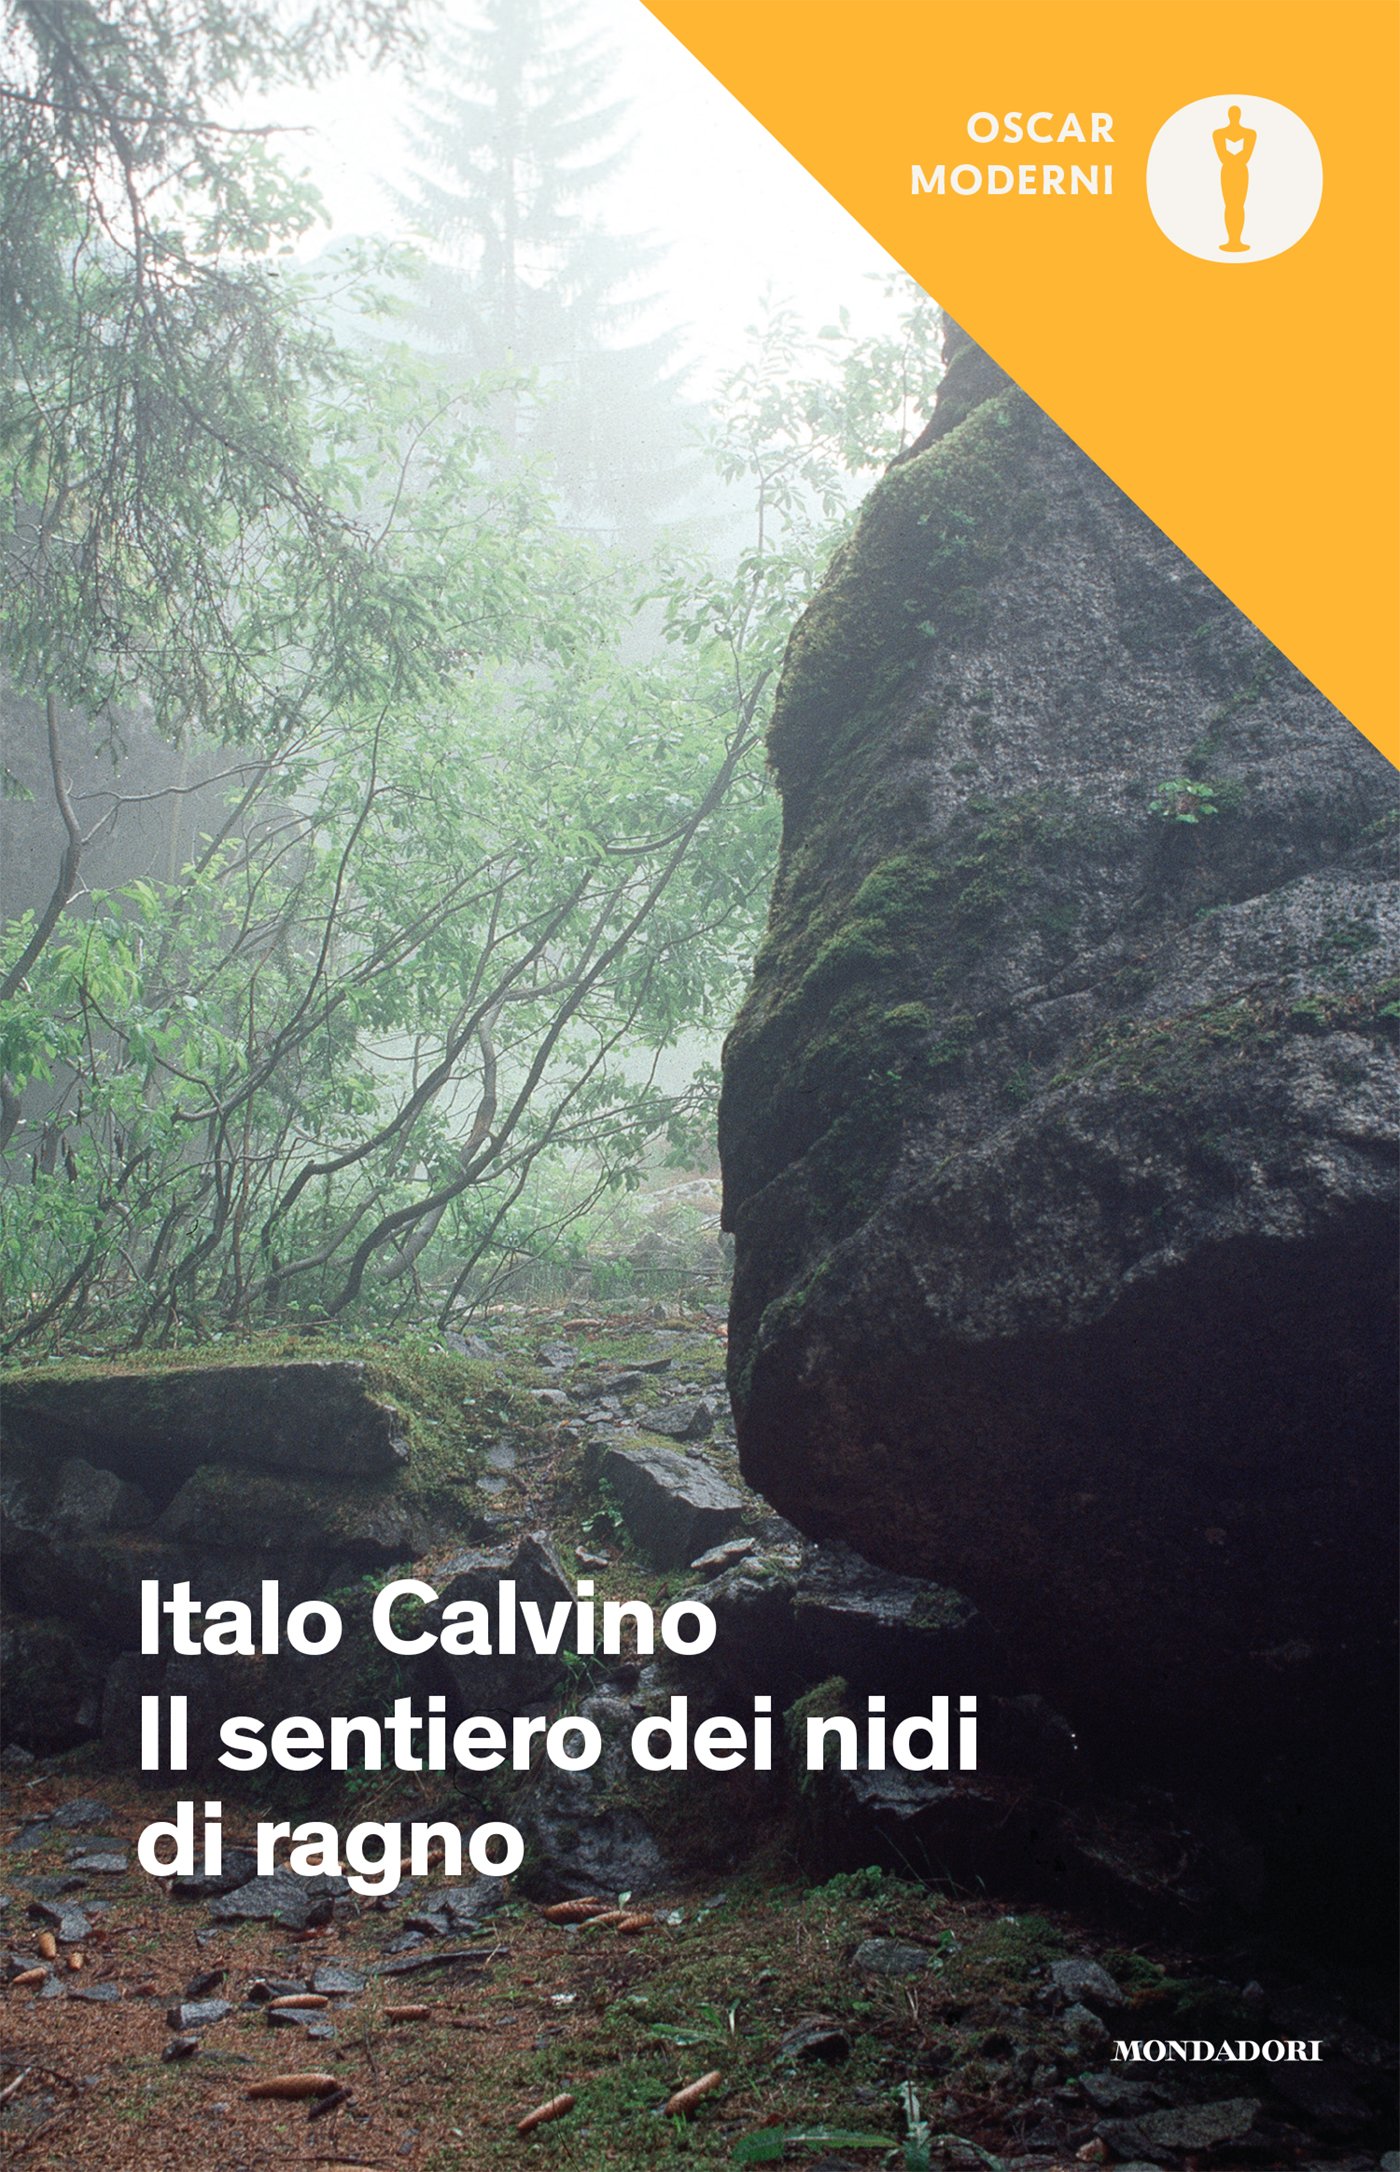 “Il sentiero dei nidi di ragno” – Italo Calvino